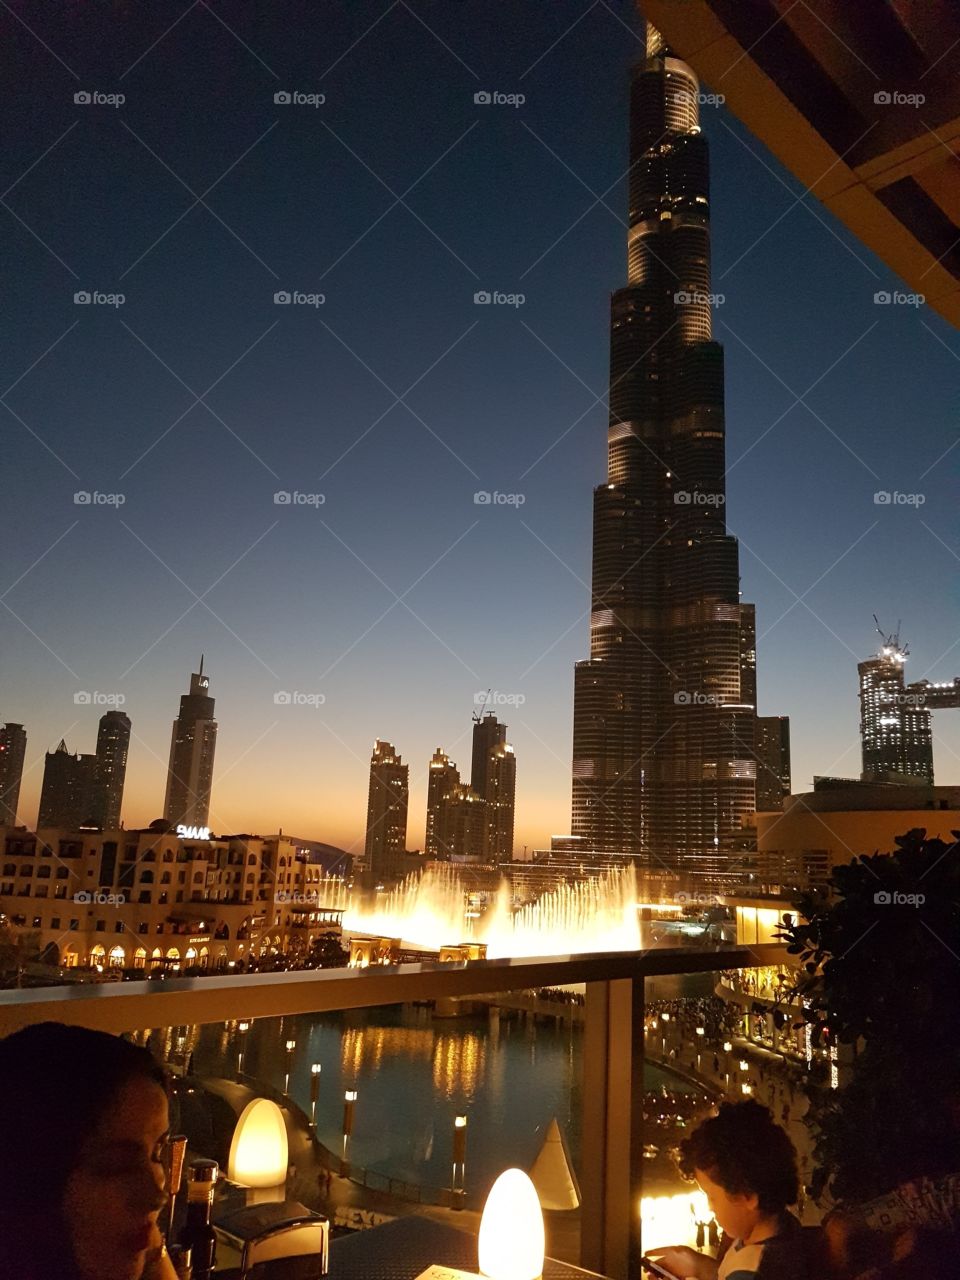 Burj Khalifa / Water show dubai mall